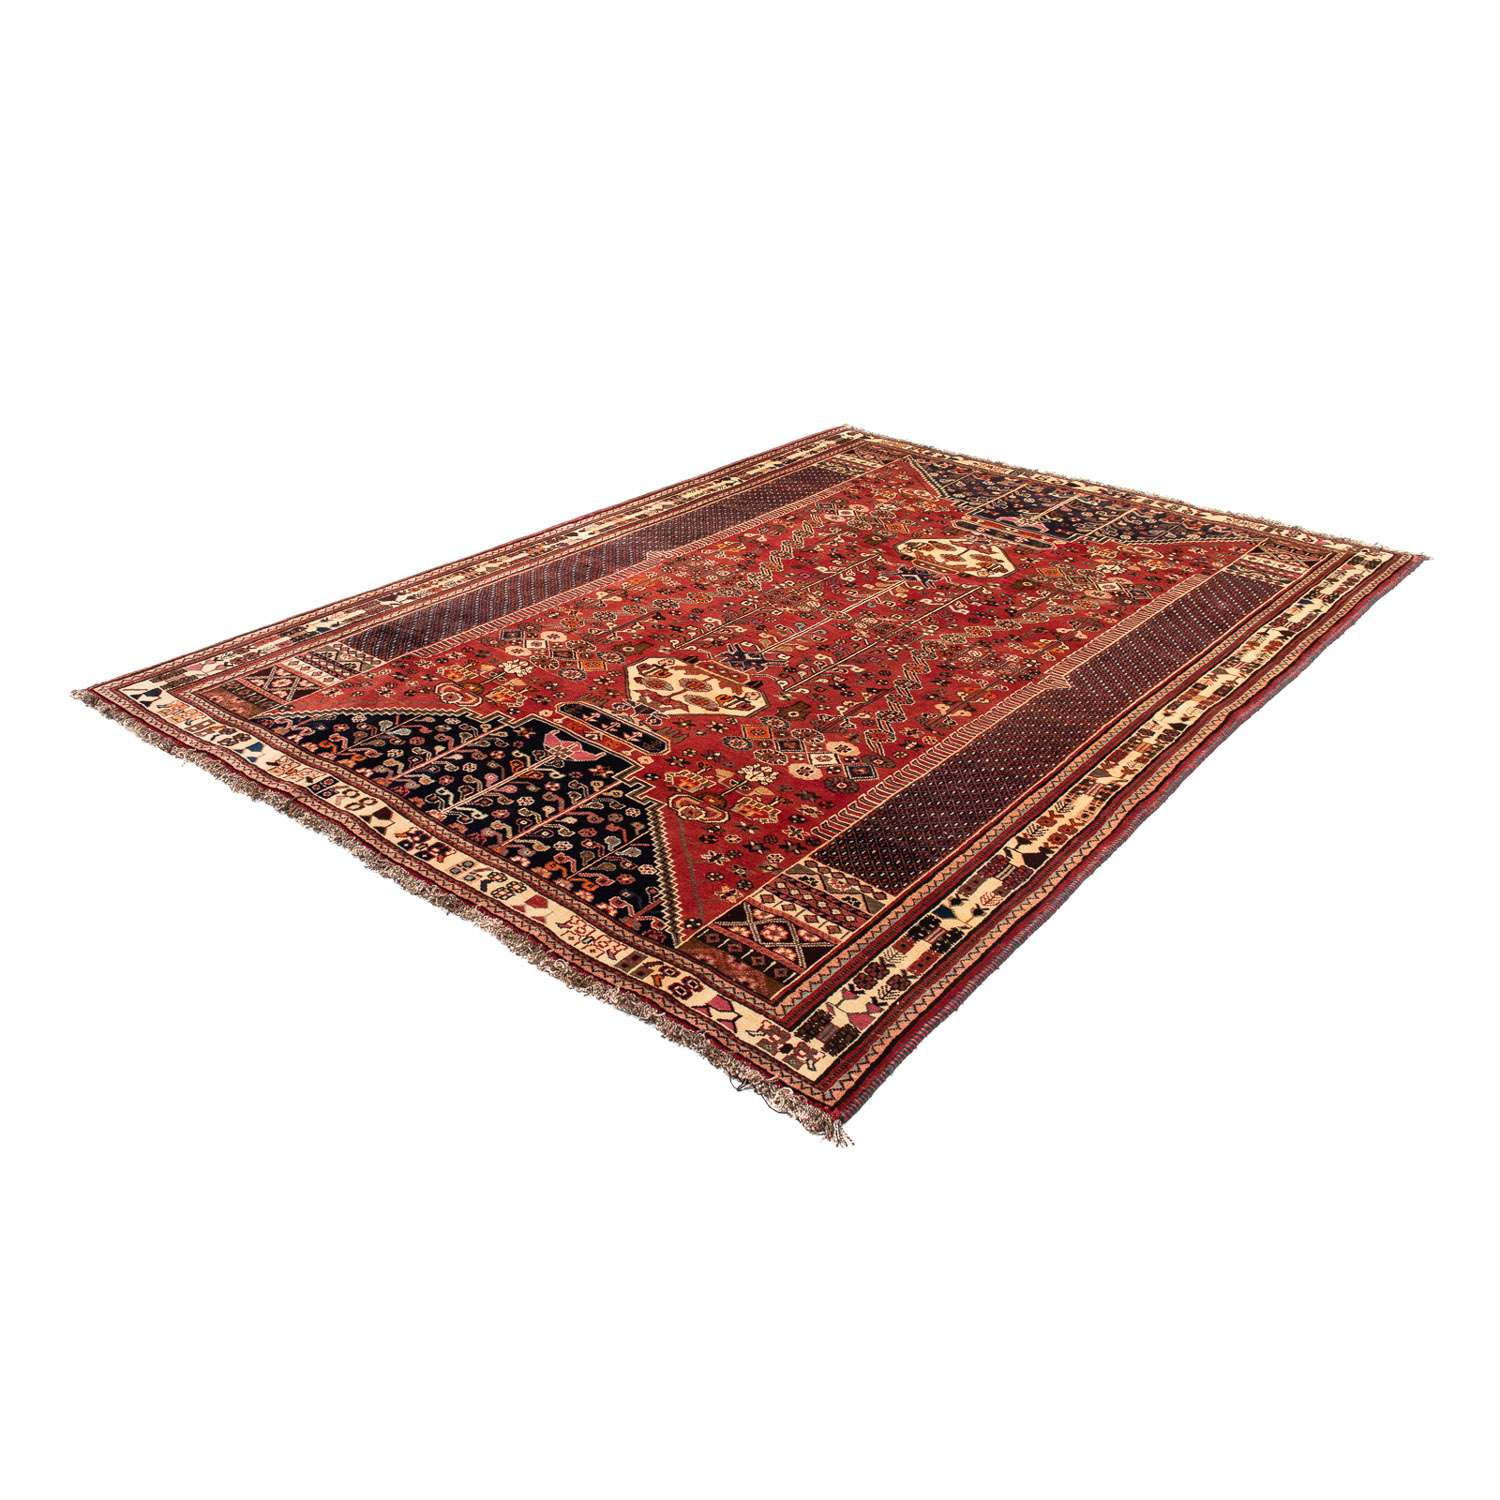 Tapis persan - Nomadic - 275 x 190 cm - rouge foncé